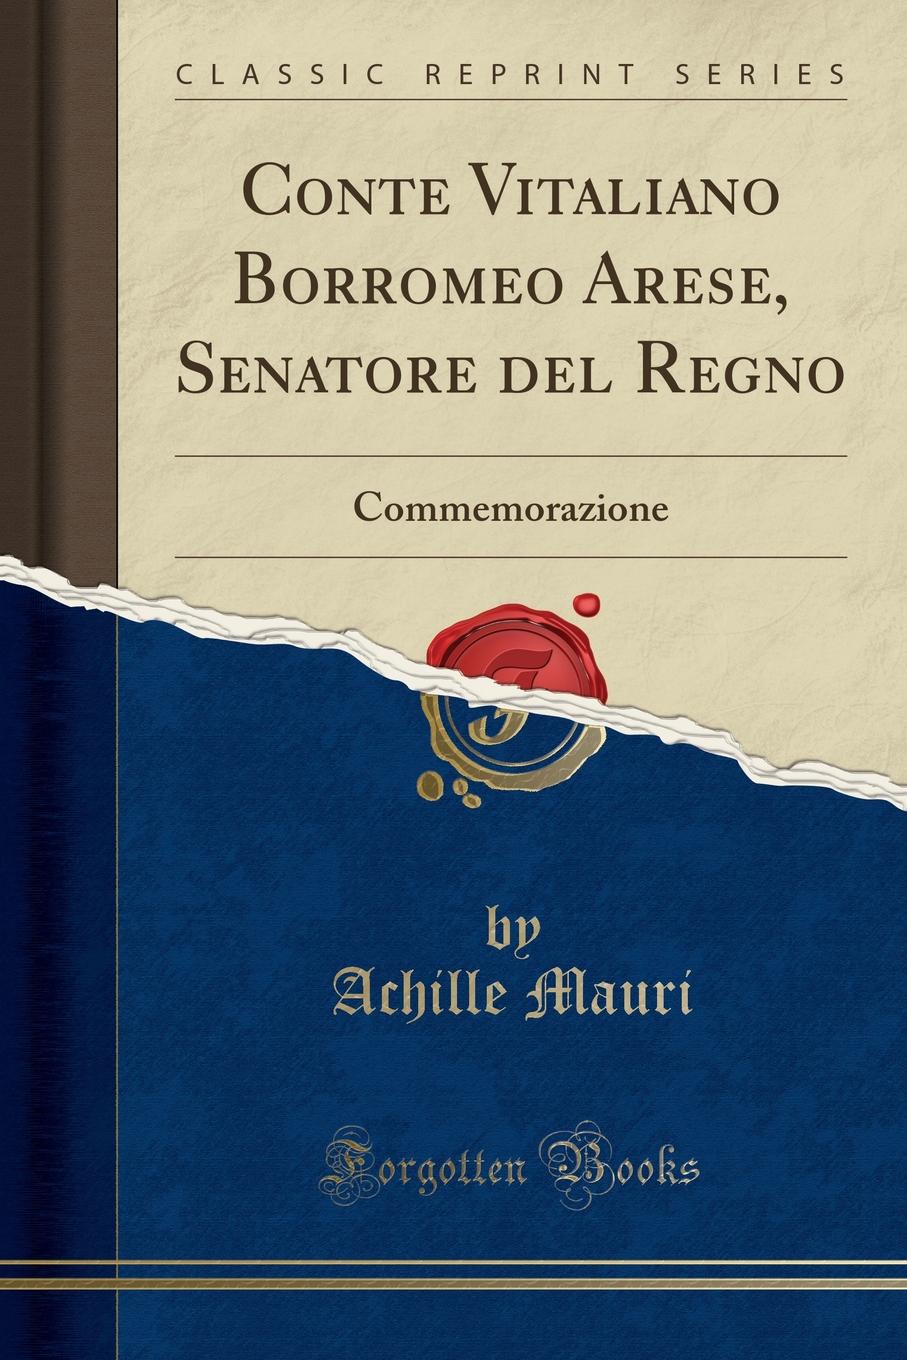 Achille Mauri Conte Vitaliano Borromeo Arese, Senatore del Regno. Commemorazione (Classic Reprint)